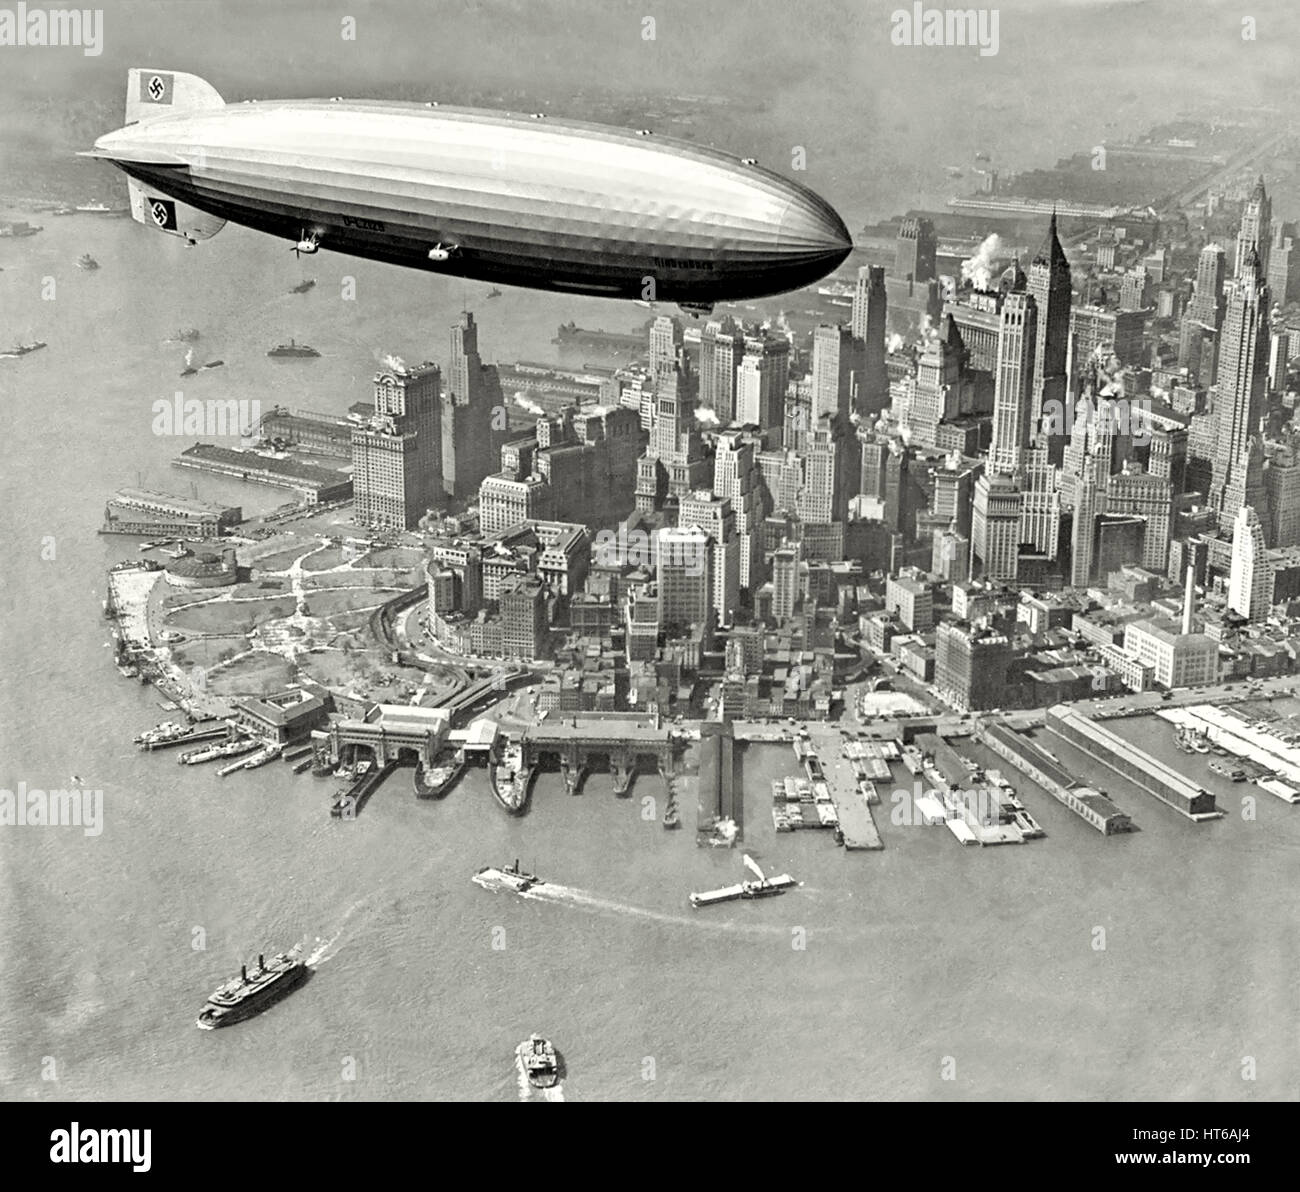 LZ 129 Hindenburg Zepplin numéro d'enregistrement D-LZ 129 dirigeable sur l'île de Manhattan, New York City Septembre 1936. Le Woolworth Building (1913) peut être vu sous le niveau moyen de l'Airship et la banque de Manhattan Trust Building (1930) semble surtout tour vers la droite. Banque D'Images